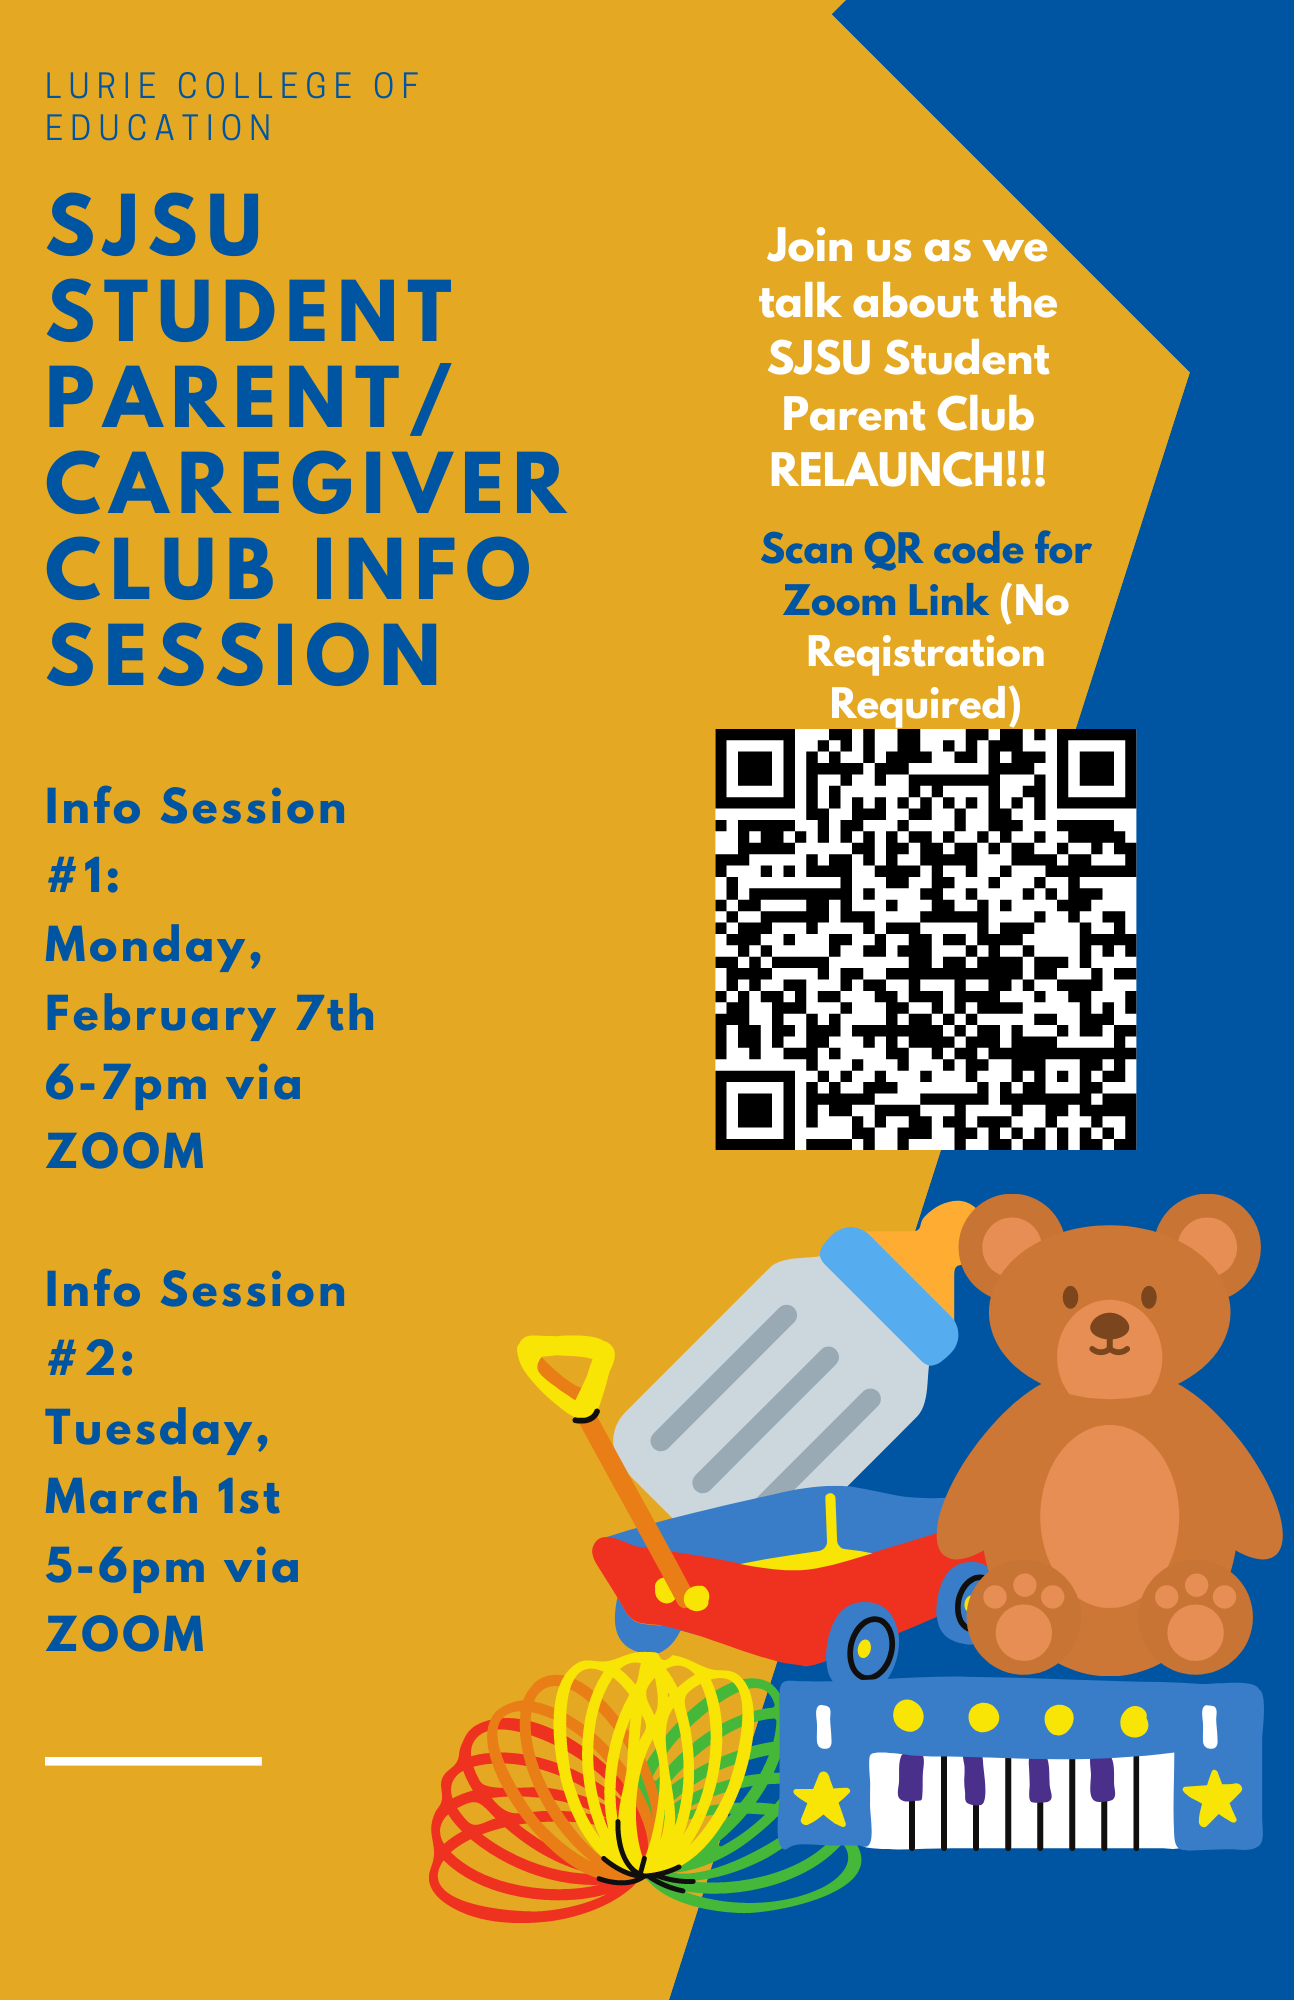 Student Parent/Caregiver Club